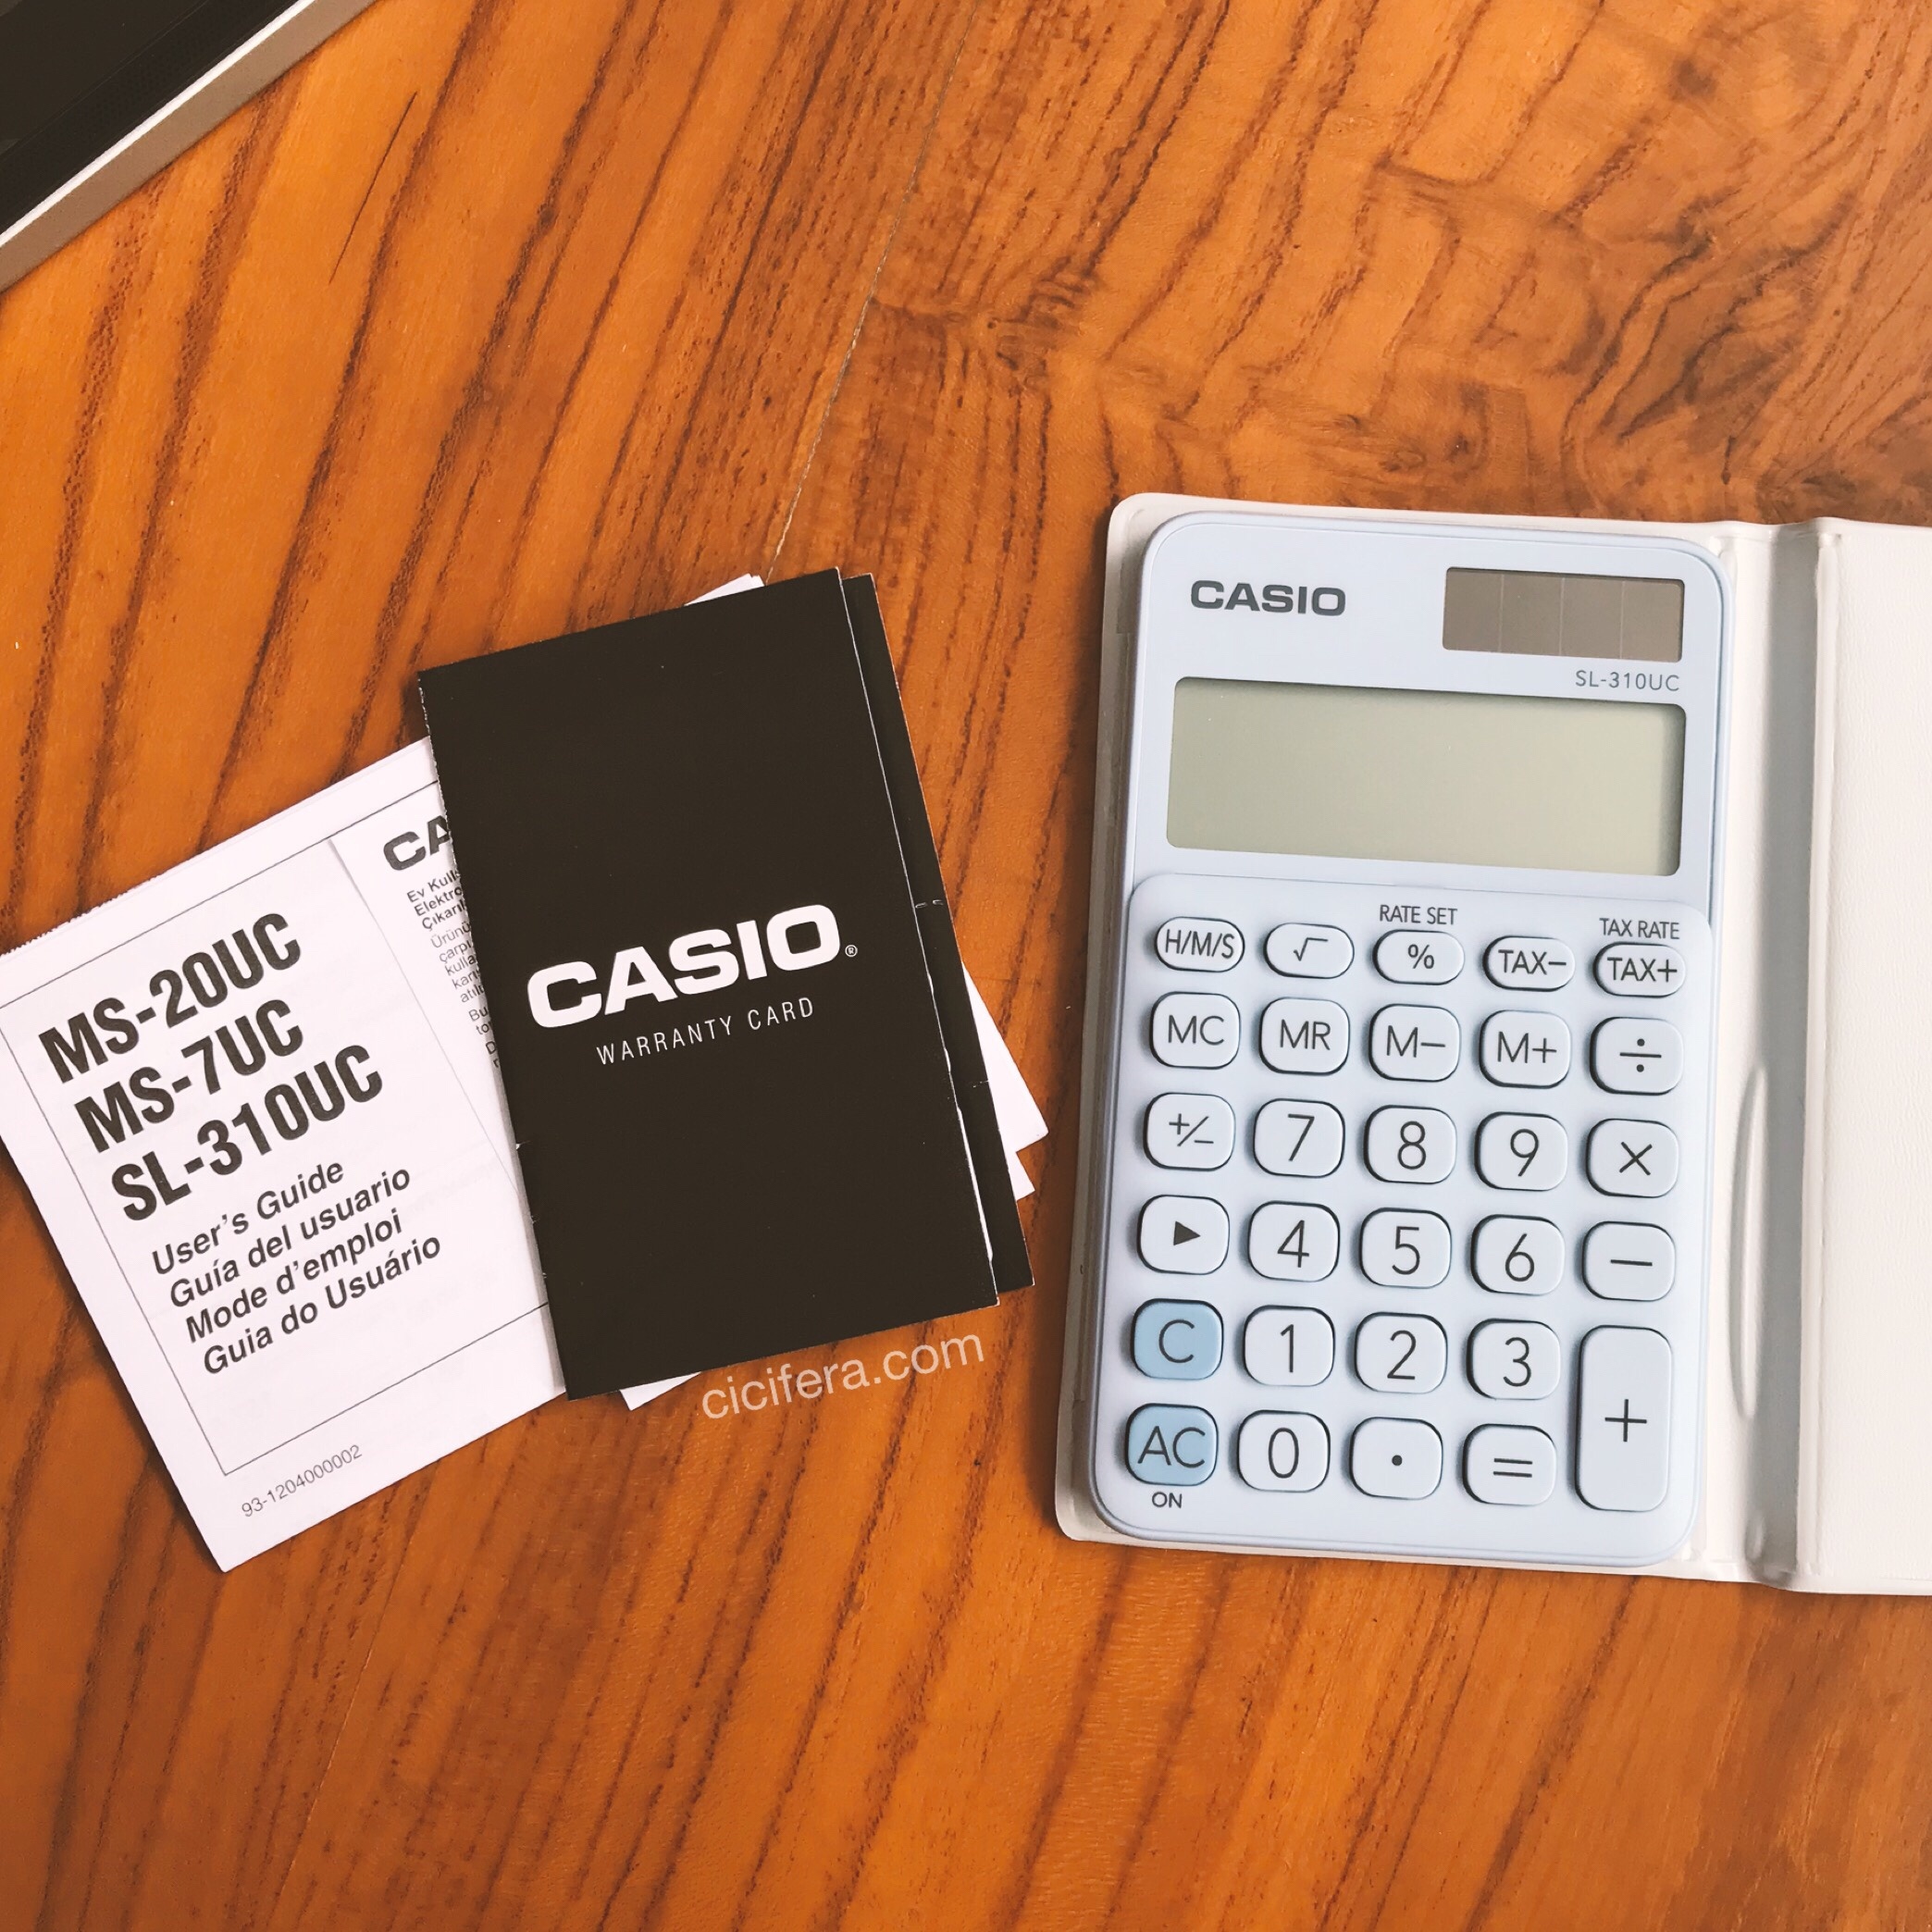 Tingkatkan mood dengan “Casio My Style”, colorful calculator yang simple dan stylish.